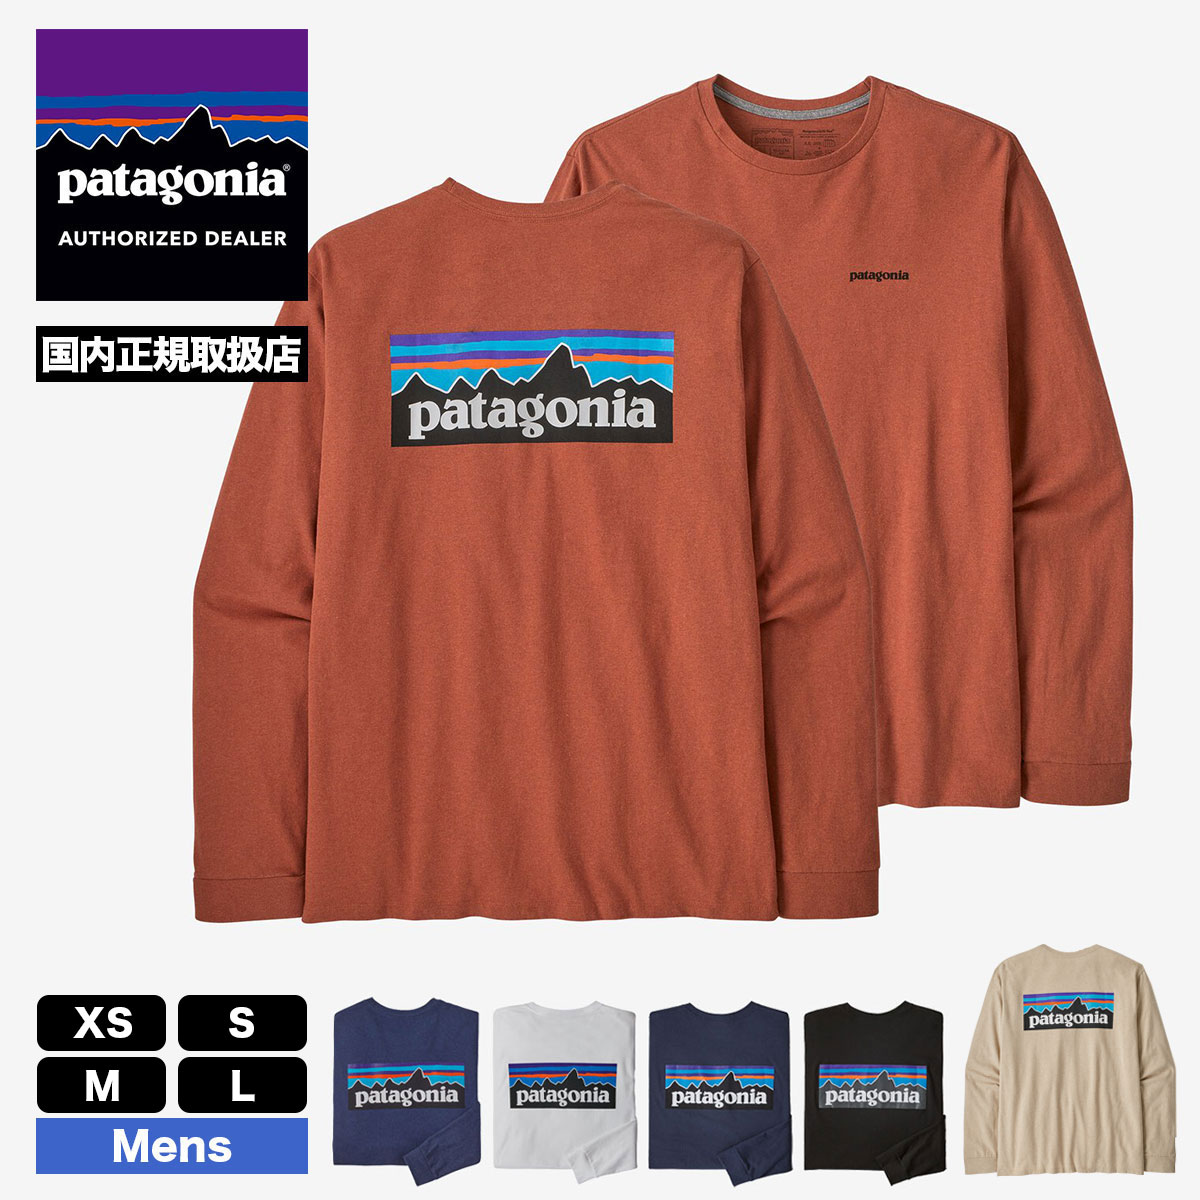 patagonia ロンT LONG-SLEEVED P-6 LOGO タンXL - Tシャツ